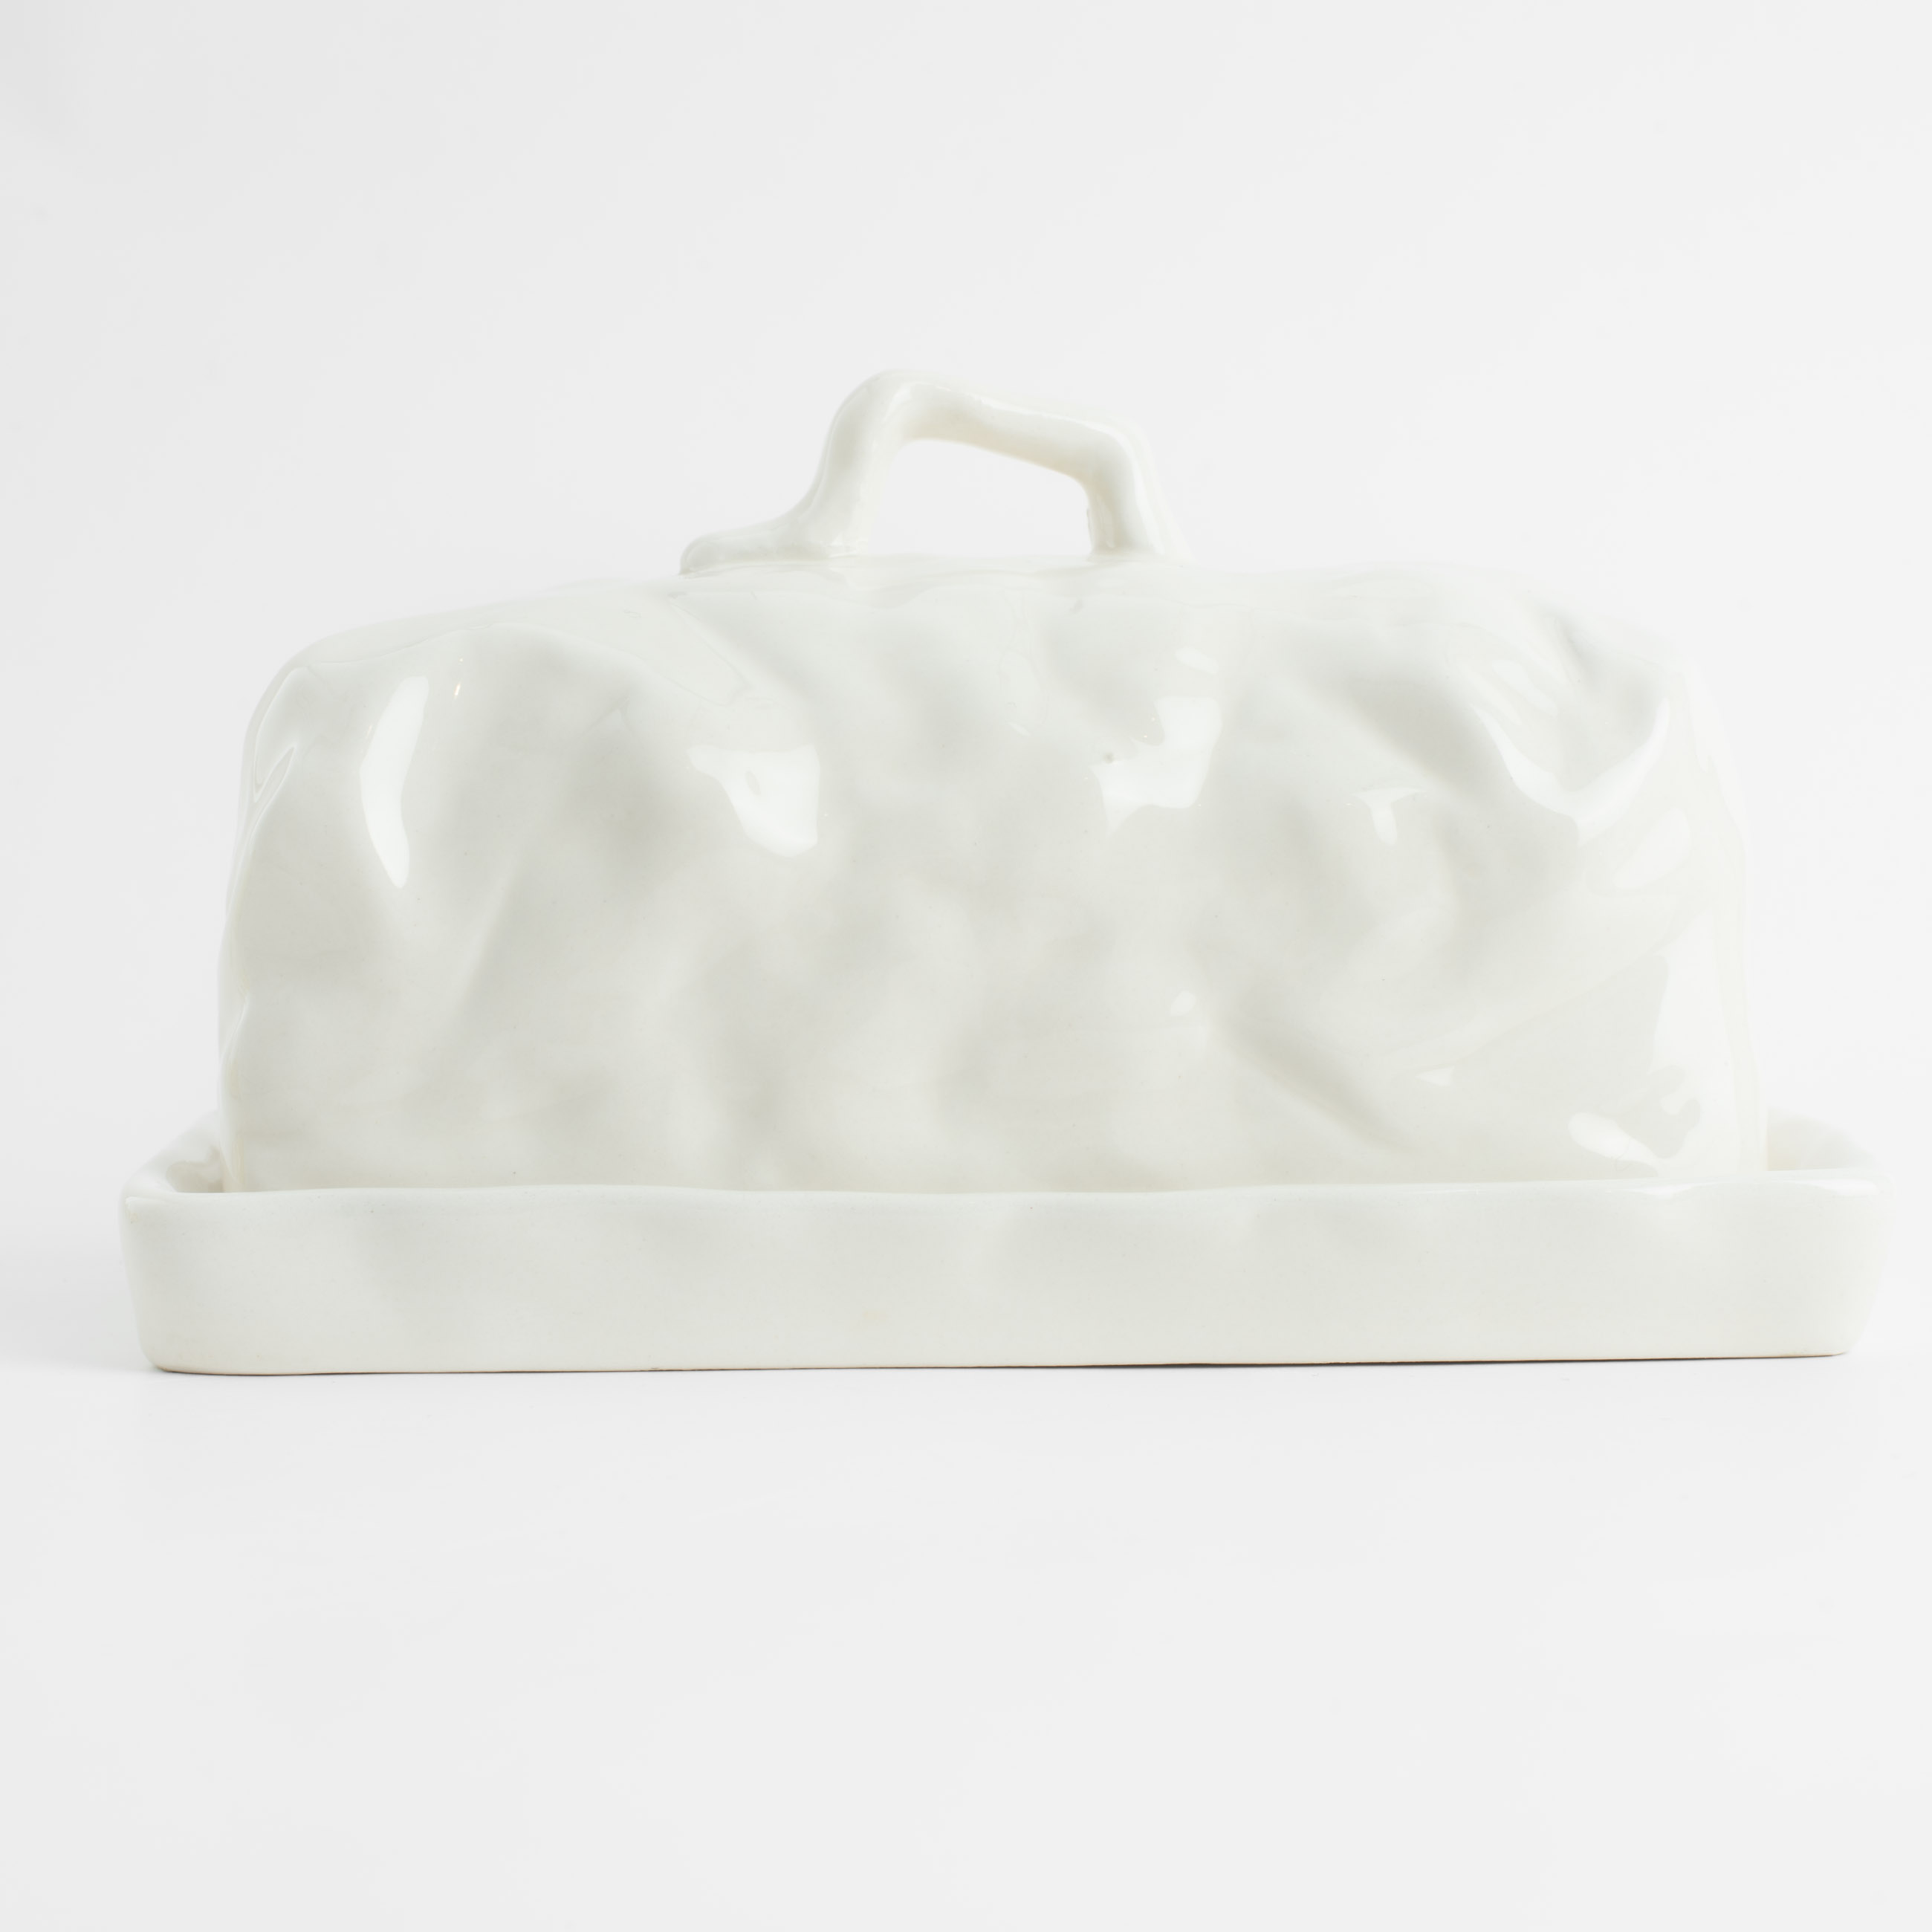 Масленка, 18 см, керамика, прямоугольная, молочная, Мятый эффект, Crumple